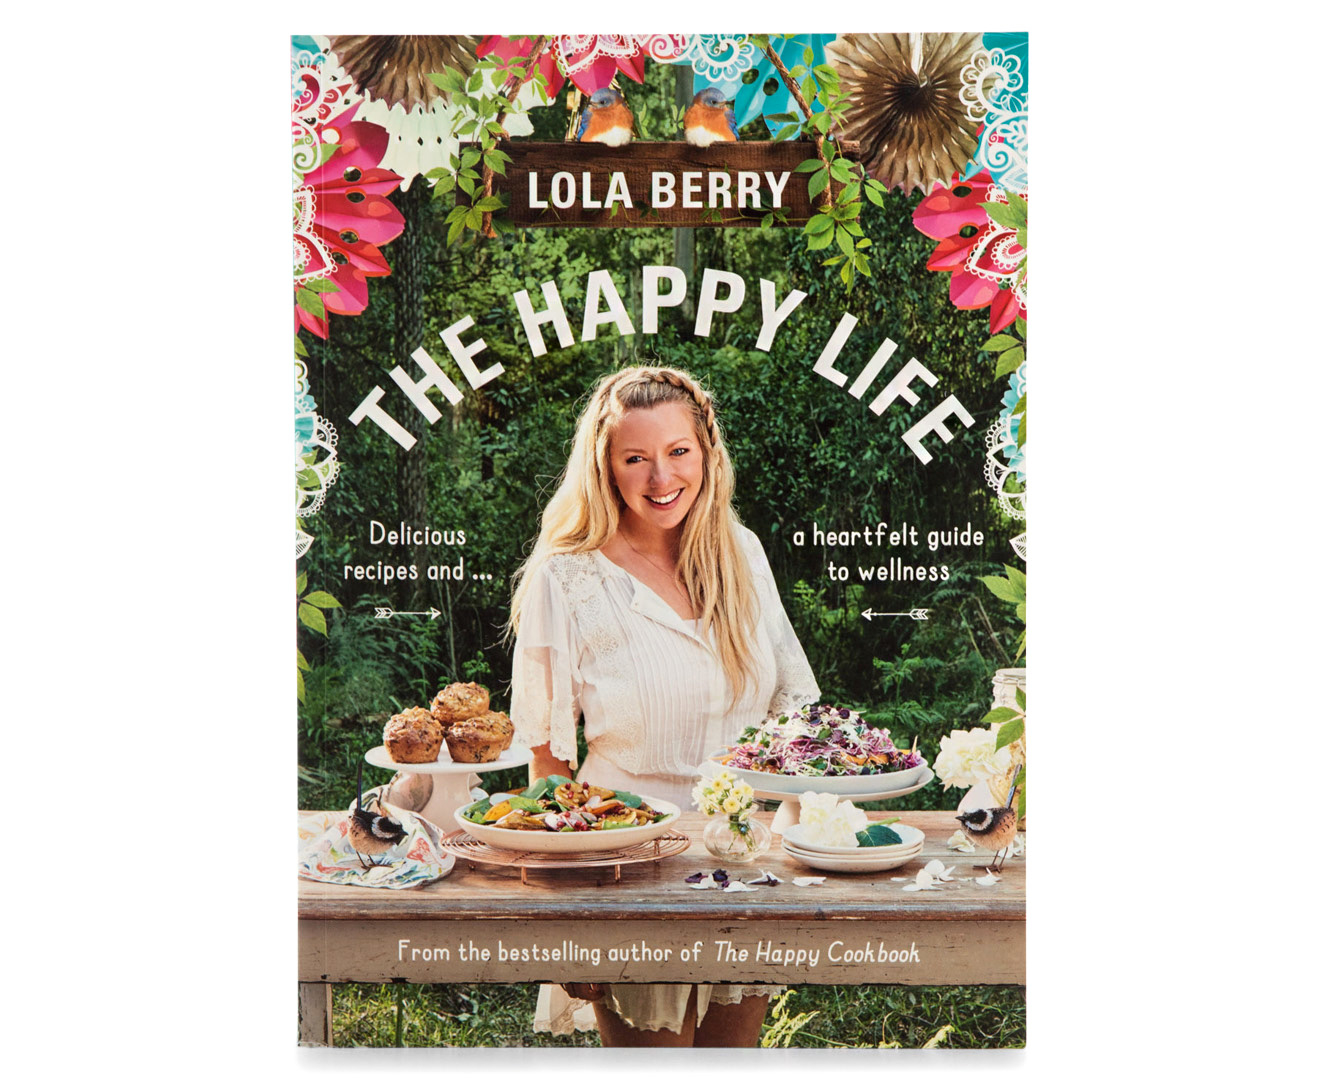 The Happy Life Cookbook